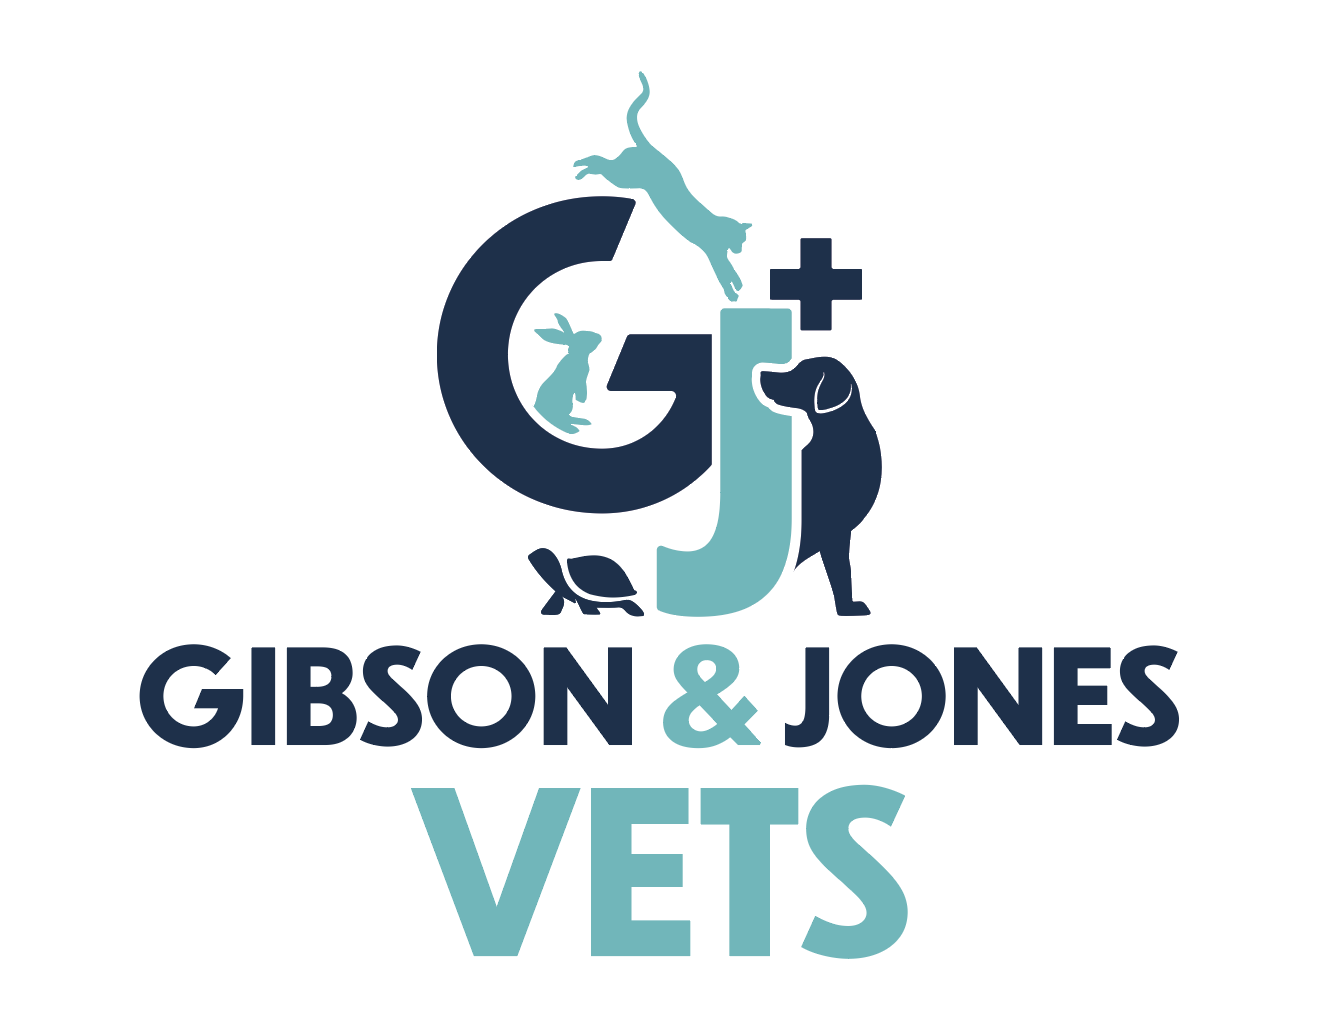 Gibson & Jones Vets - Gowerton Vets